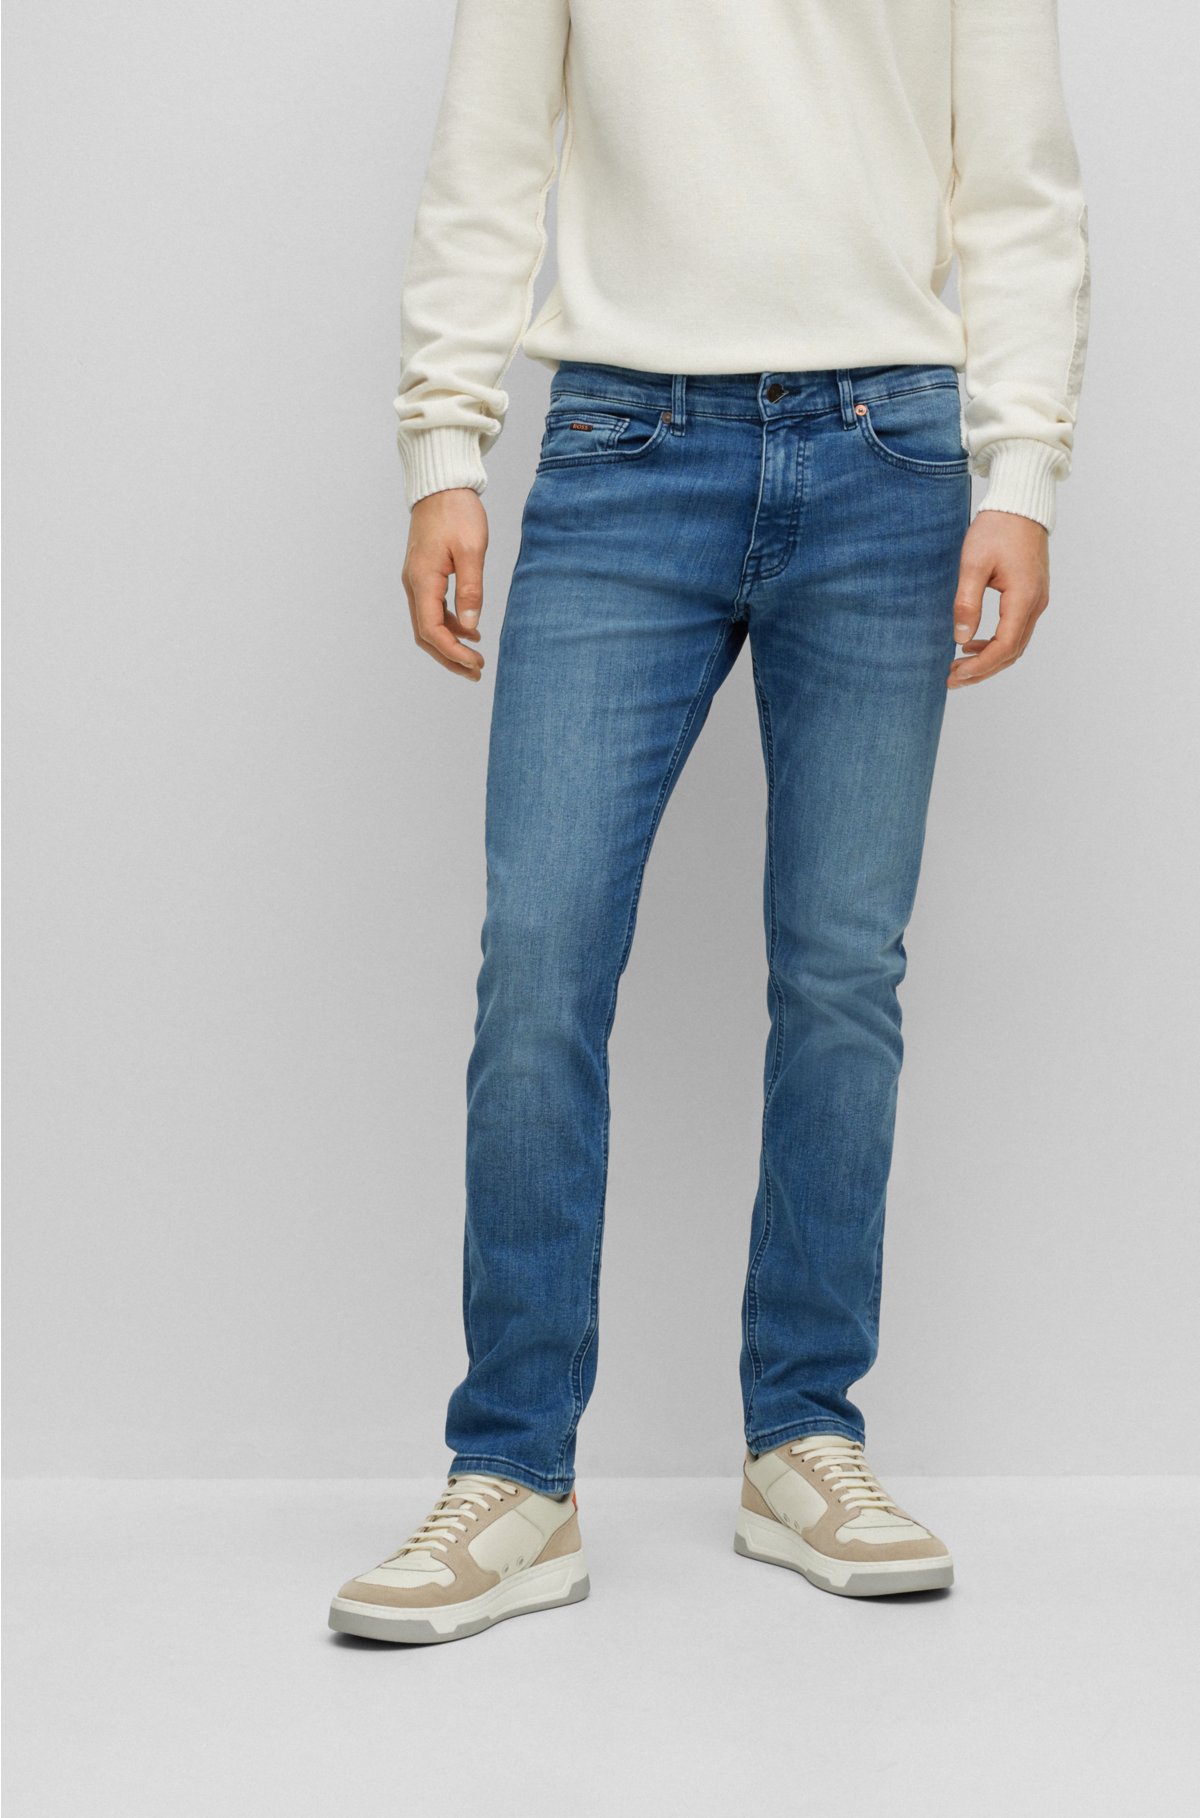 døråbning Afslag Bemærk venligst BOSS - Slim-fit jeans in blue super-stretch denim